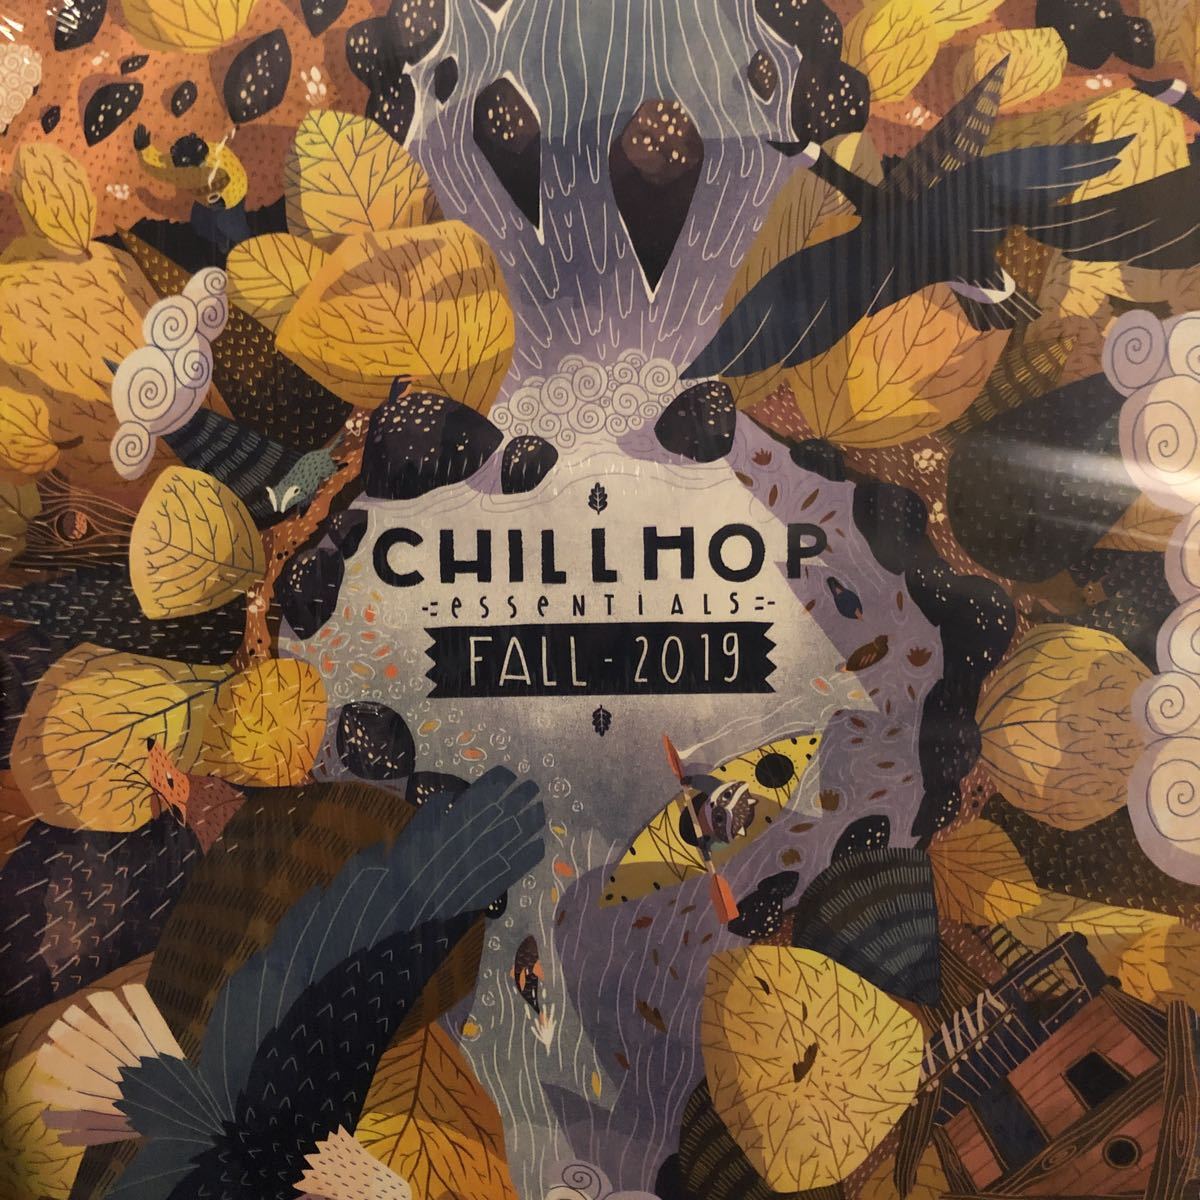 500円引きクーポン】 Various 2019 Fall - Essentials Chillhop - ラップ、ヒップホップ - hlt.no